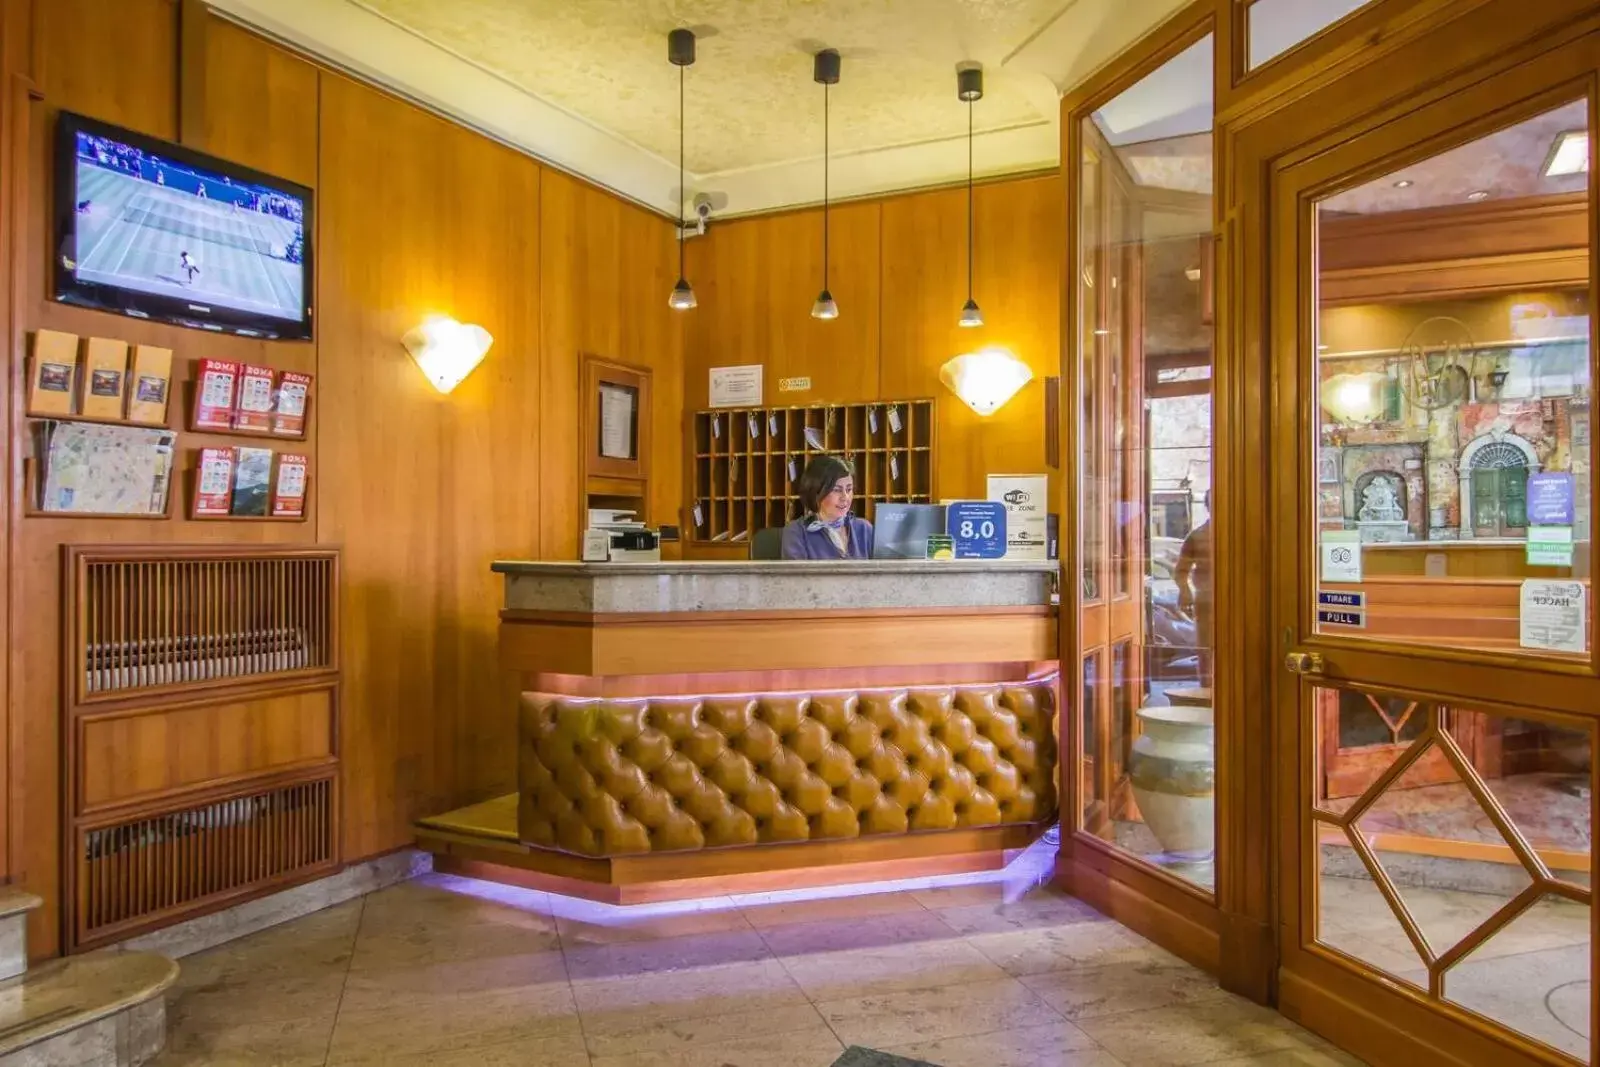 Lobby or reception, Lobby/Reception in Hotel Verona Rome